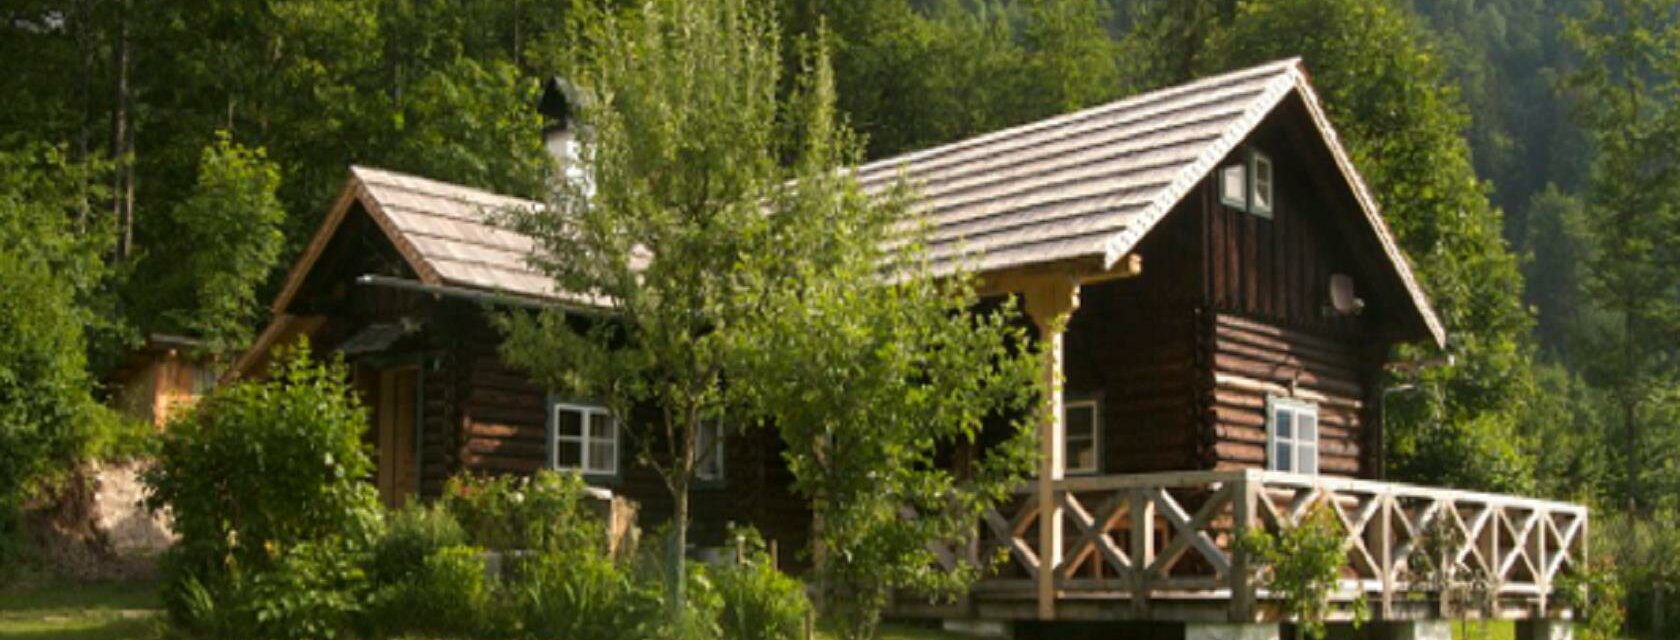 Forsthaus-Domiz, Grundlsee, Hausansicht mit Garten